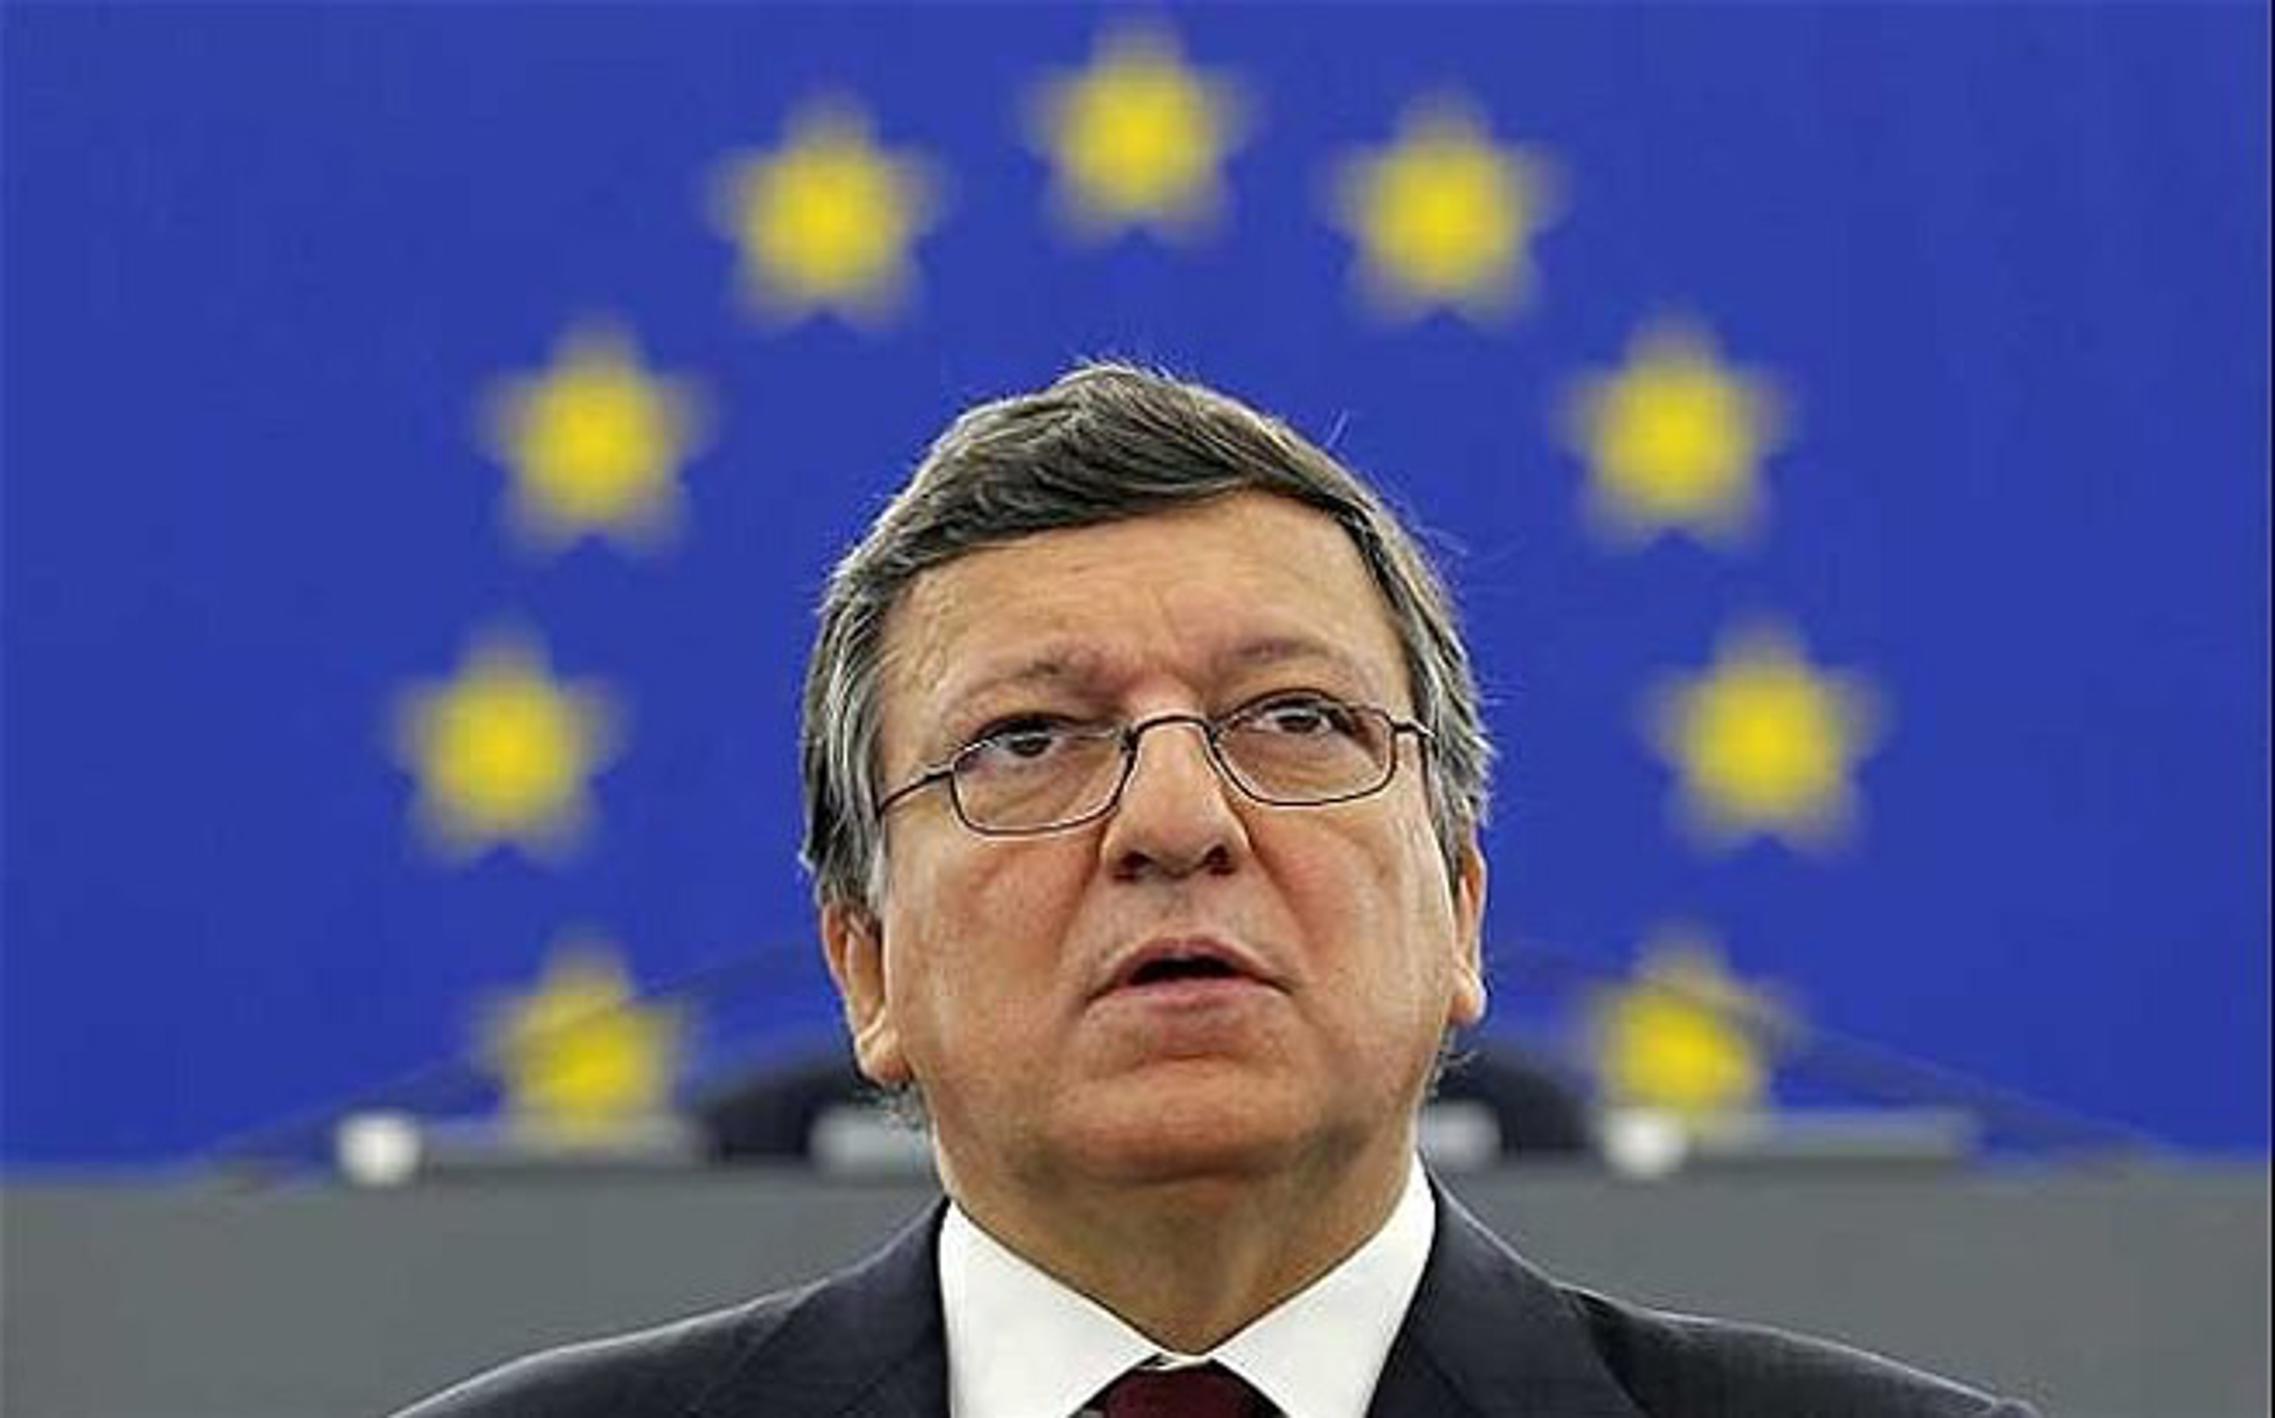 Neokrunjeni kralj EU - José Manuel Barroso